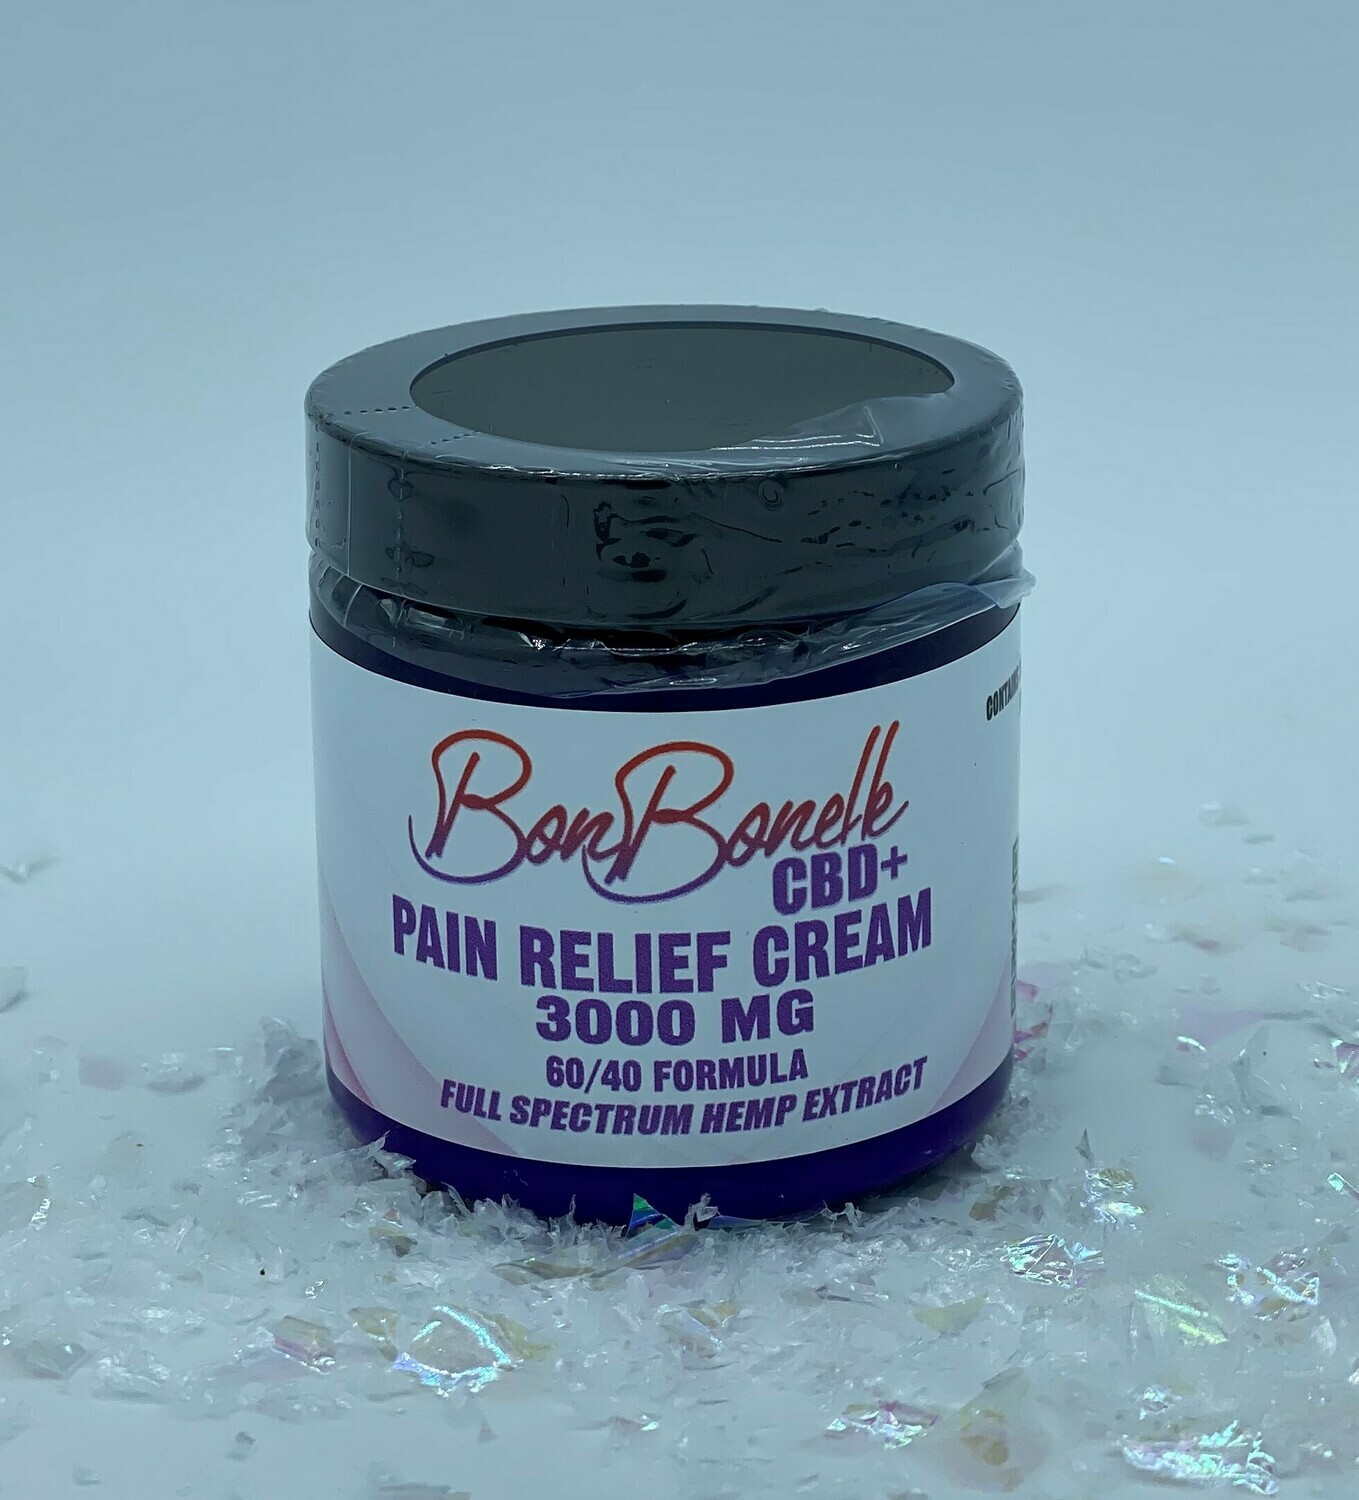 Wholesale CBD Pain Relief Cream 60/40 formula